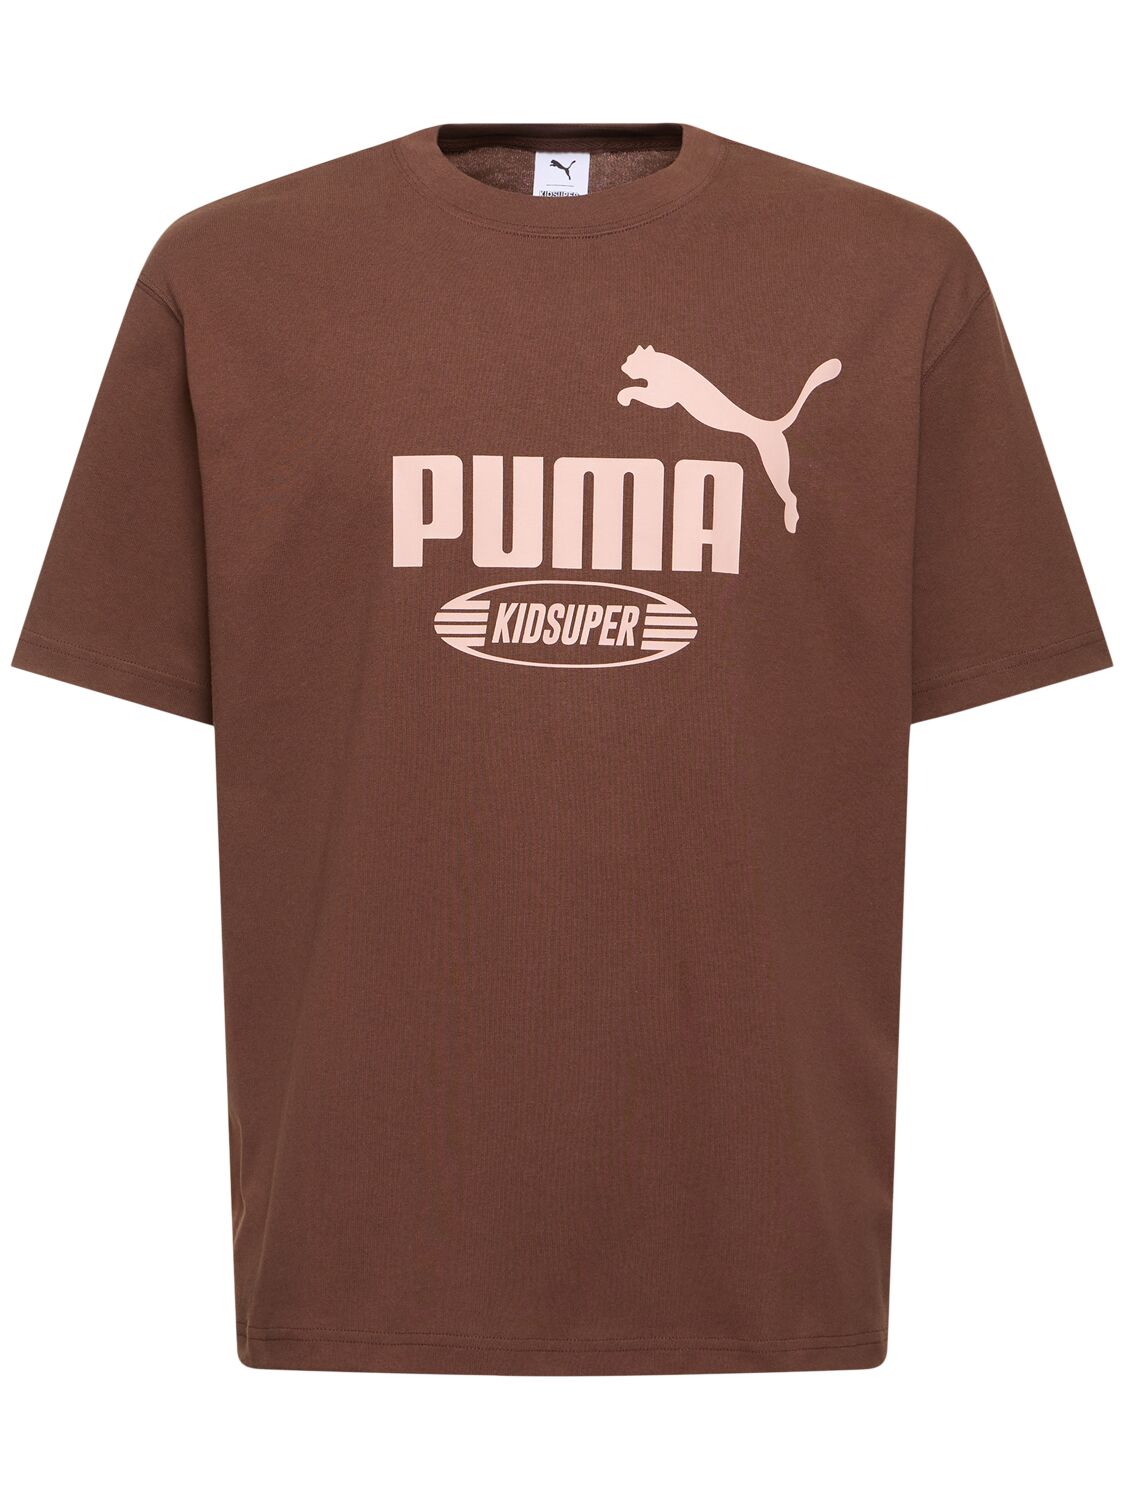 Puma Kidsuper Studios Logo T-shirt In Brown